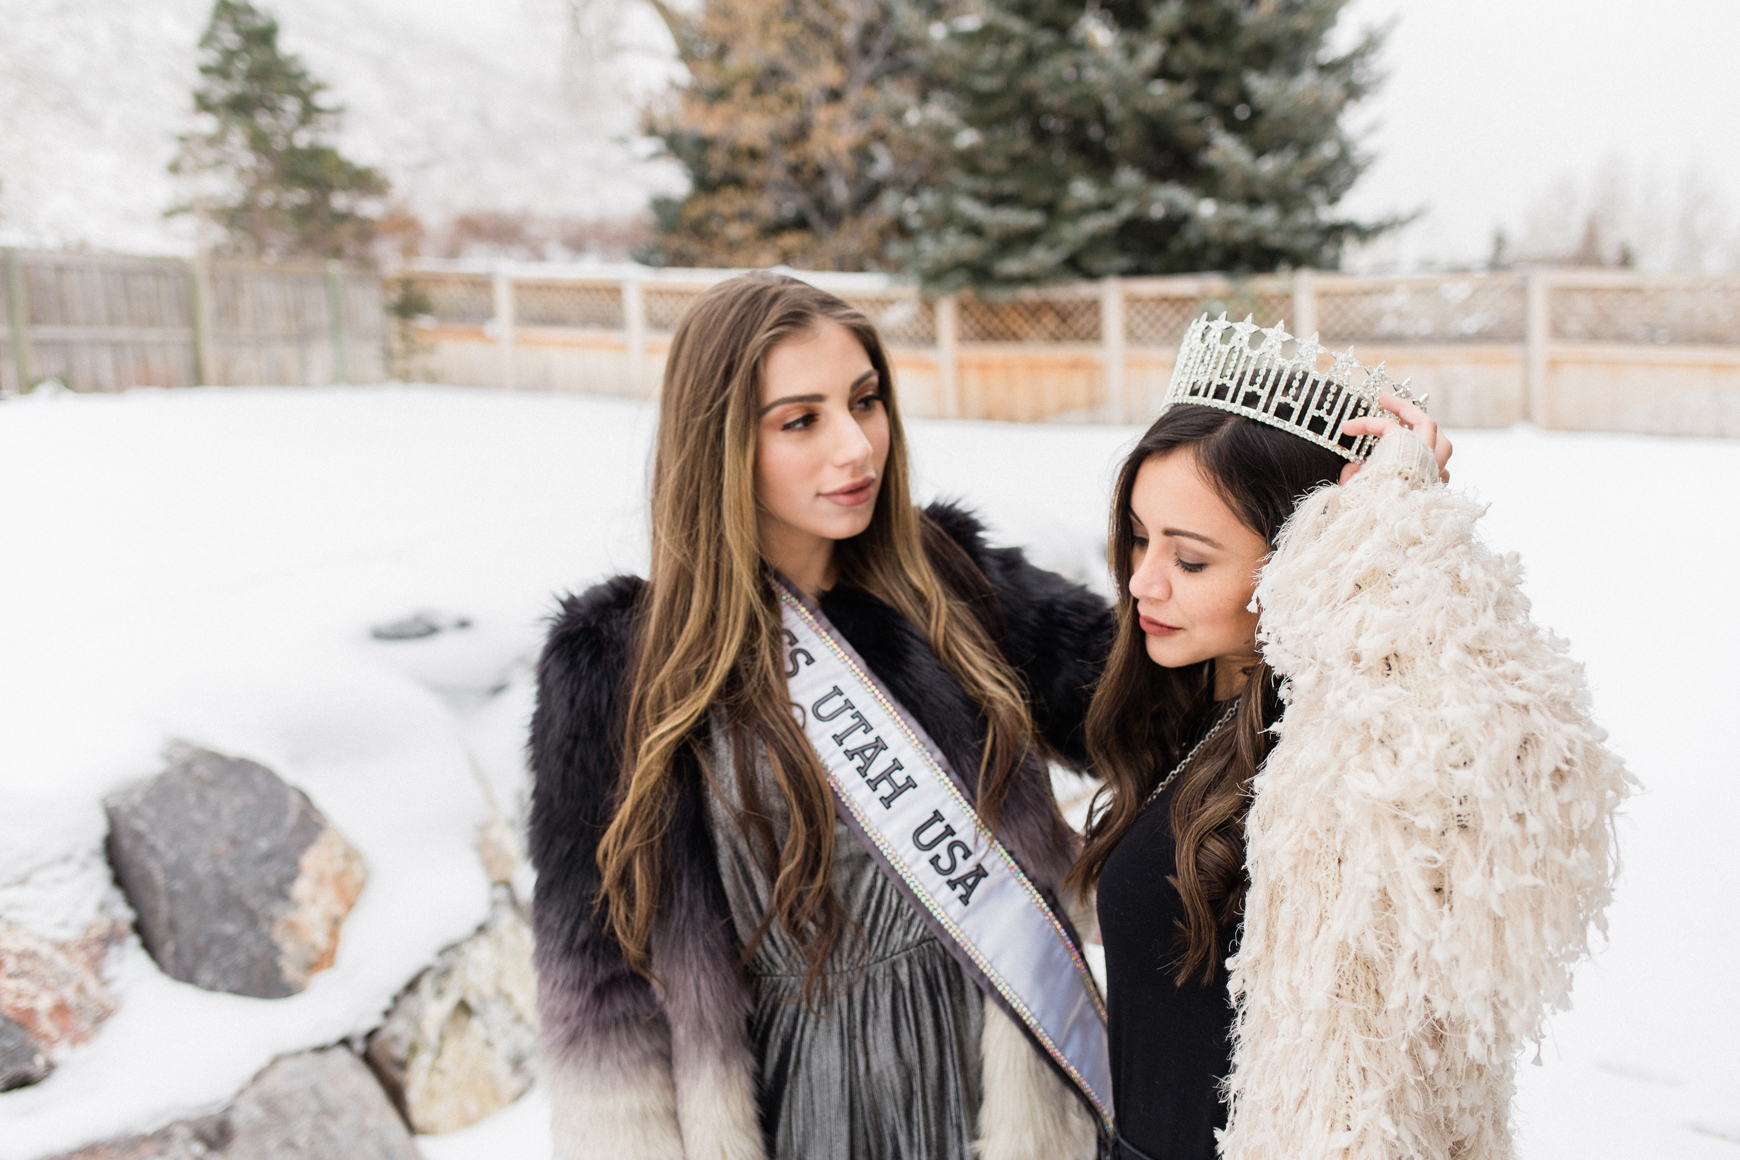 Miss Utah 2018